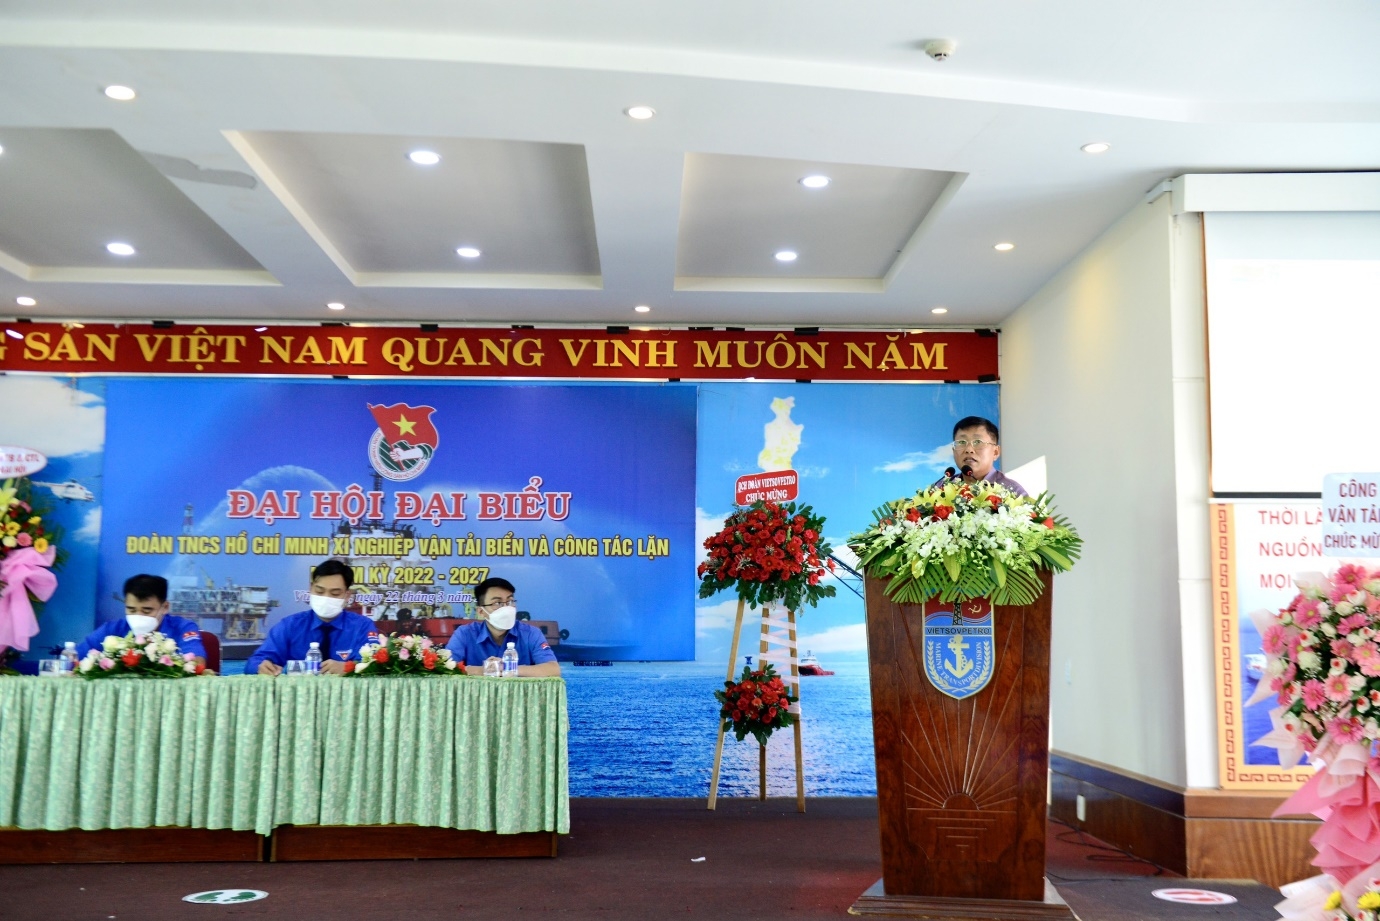 Đại hội Đại biểu Đoàn Thanh niên Xí nghiệp Vận tải biển và Công tác lặn lần thứ VIII, nhiệm kỳ 2022 - 2027